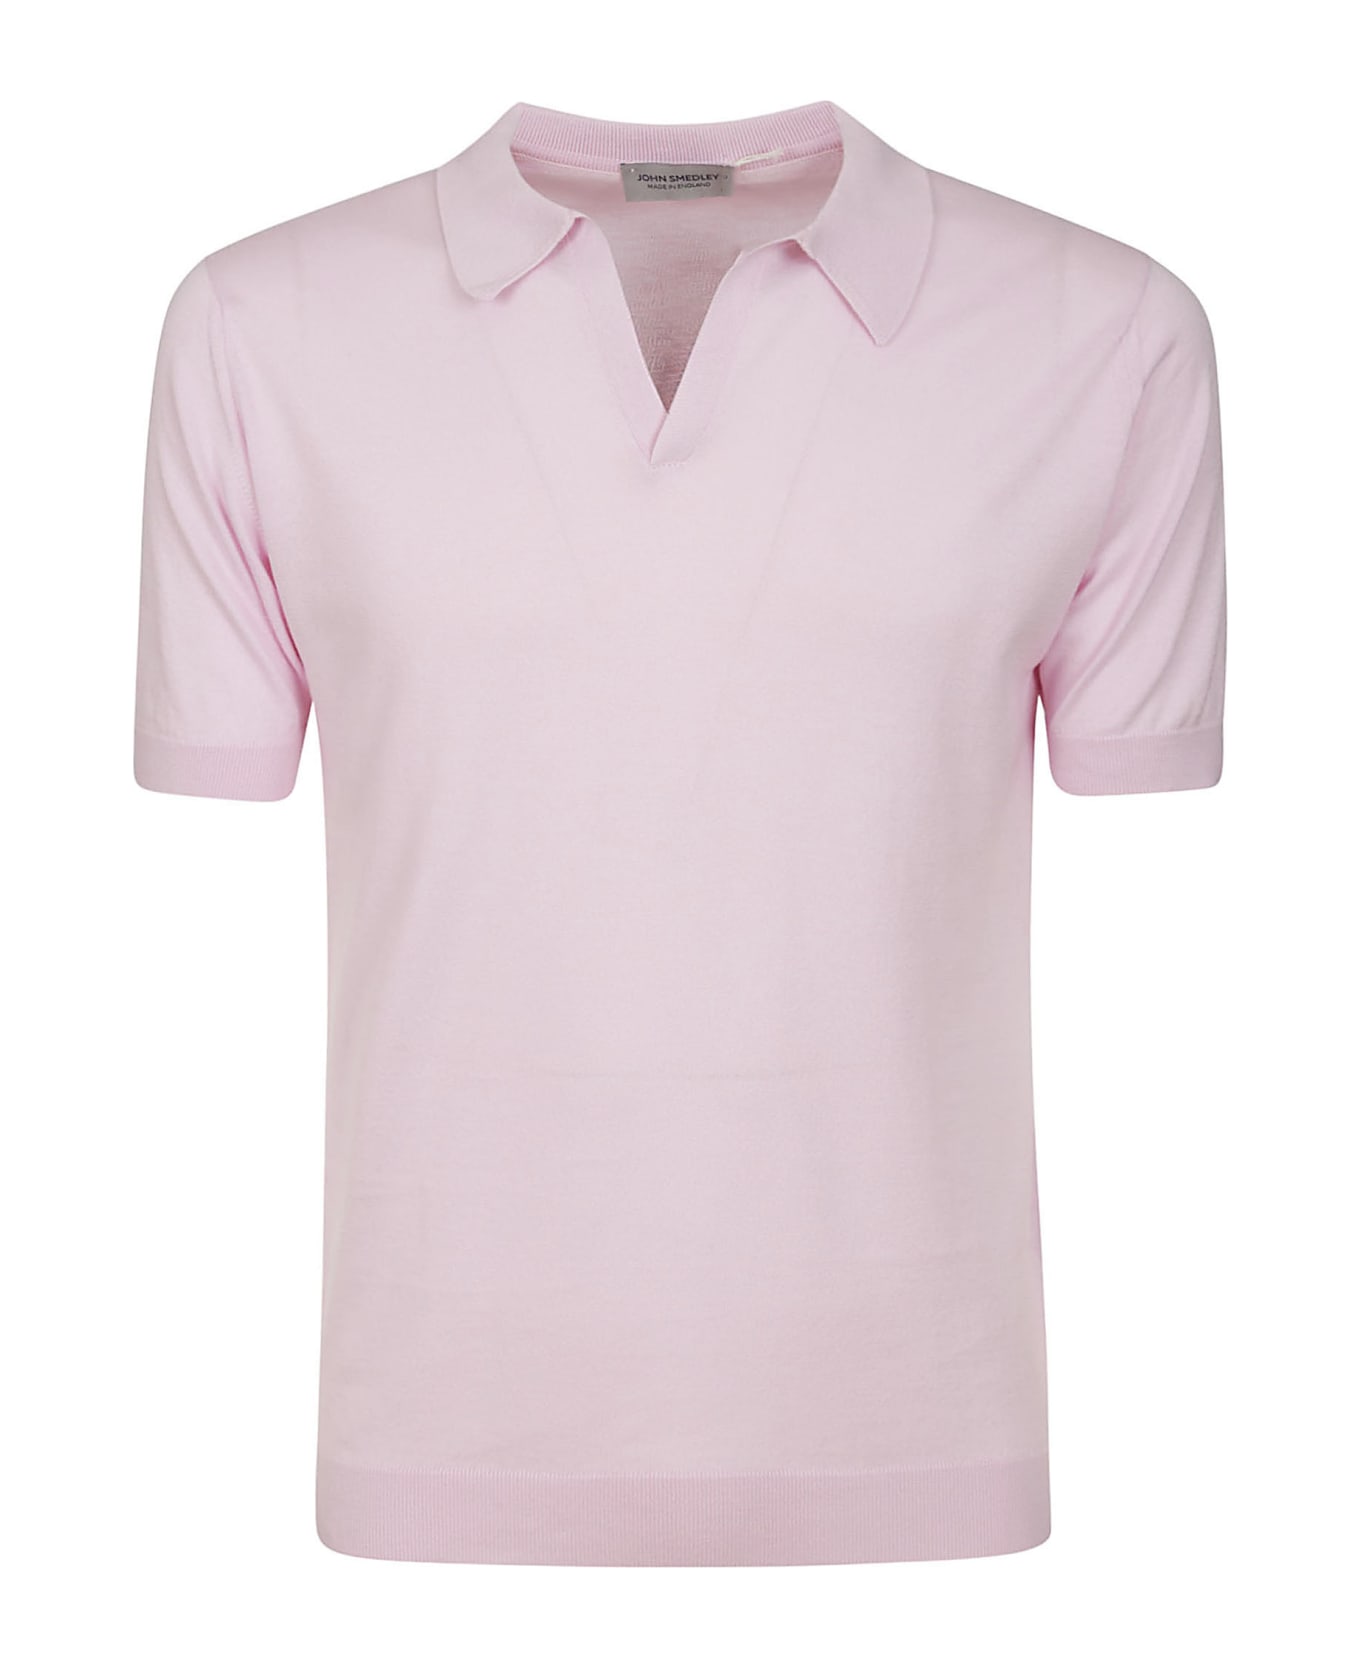 John Smedley Noah Skipper Collar Shirt Ss - Mallow Pink